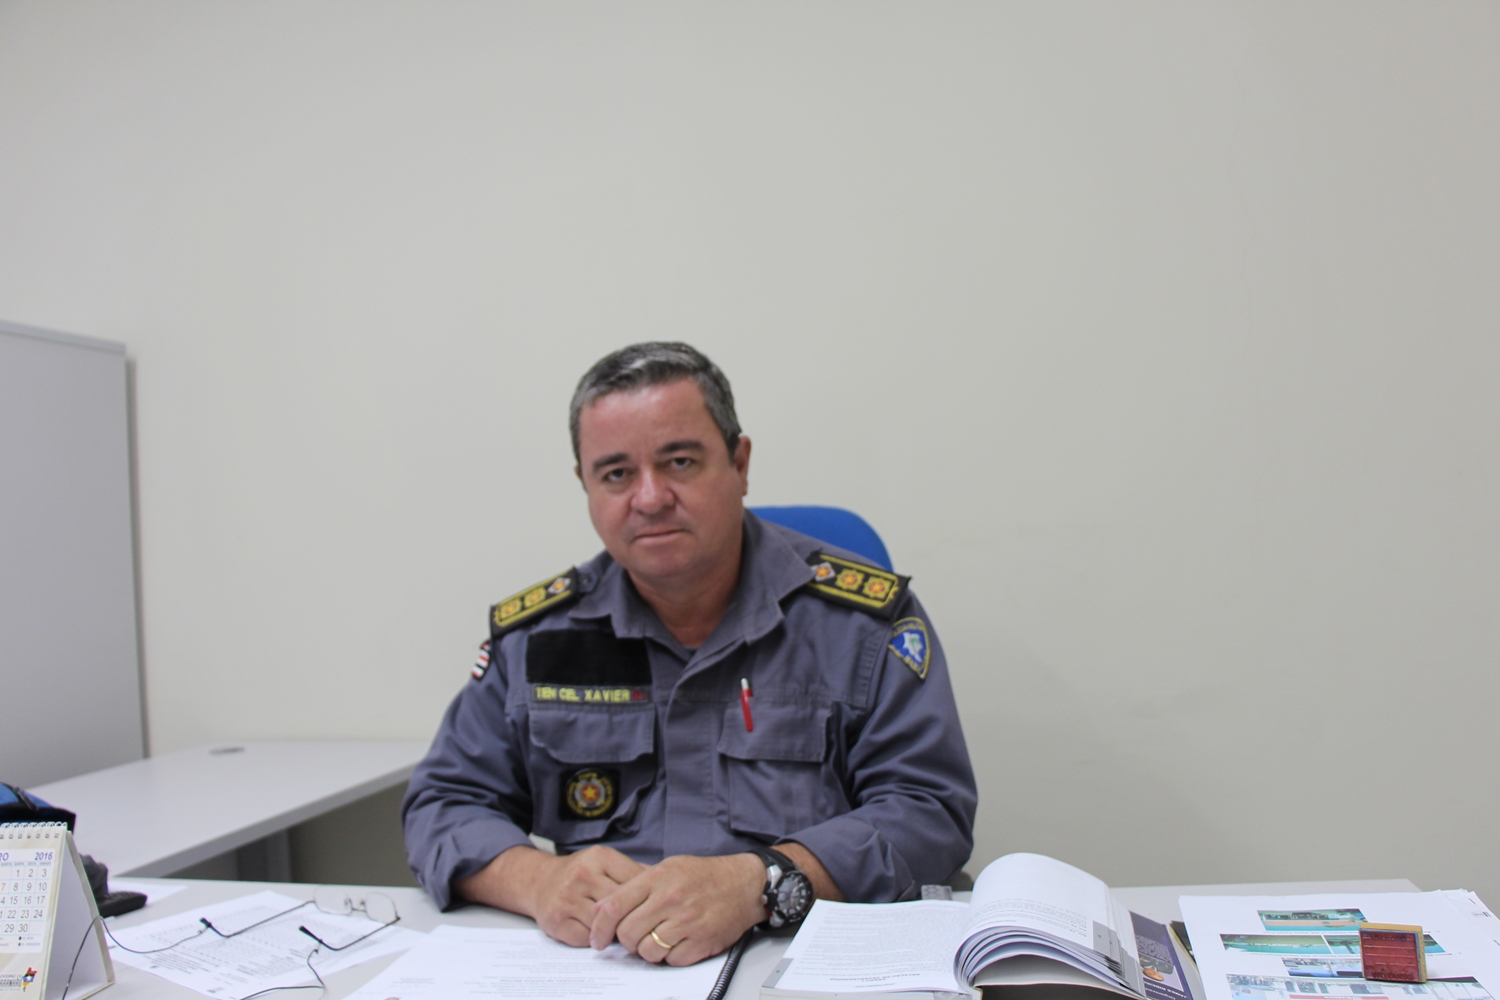 Tenente-coronel Jairo Xavier